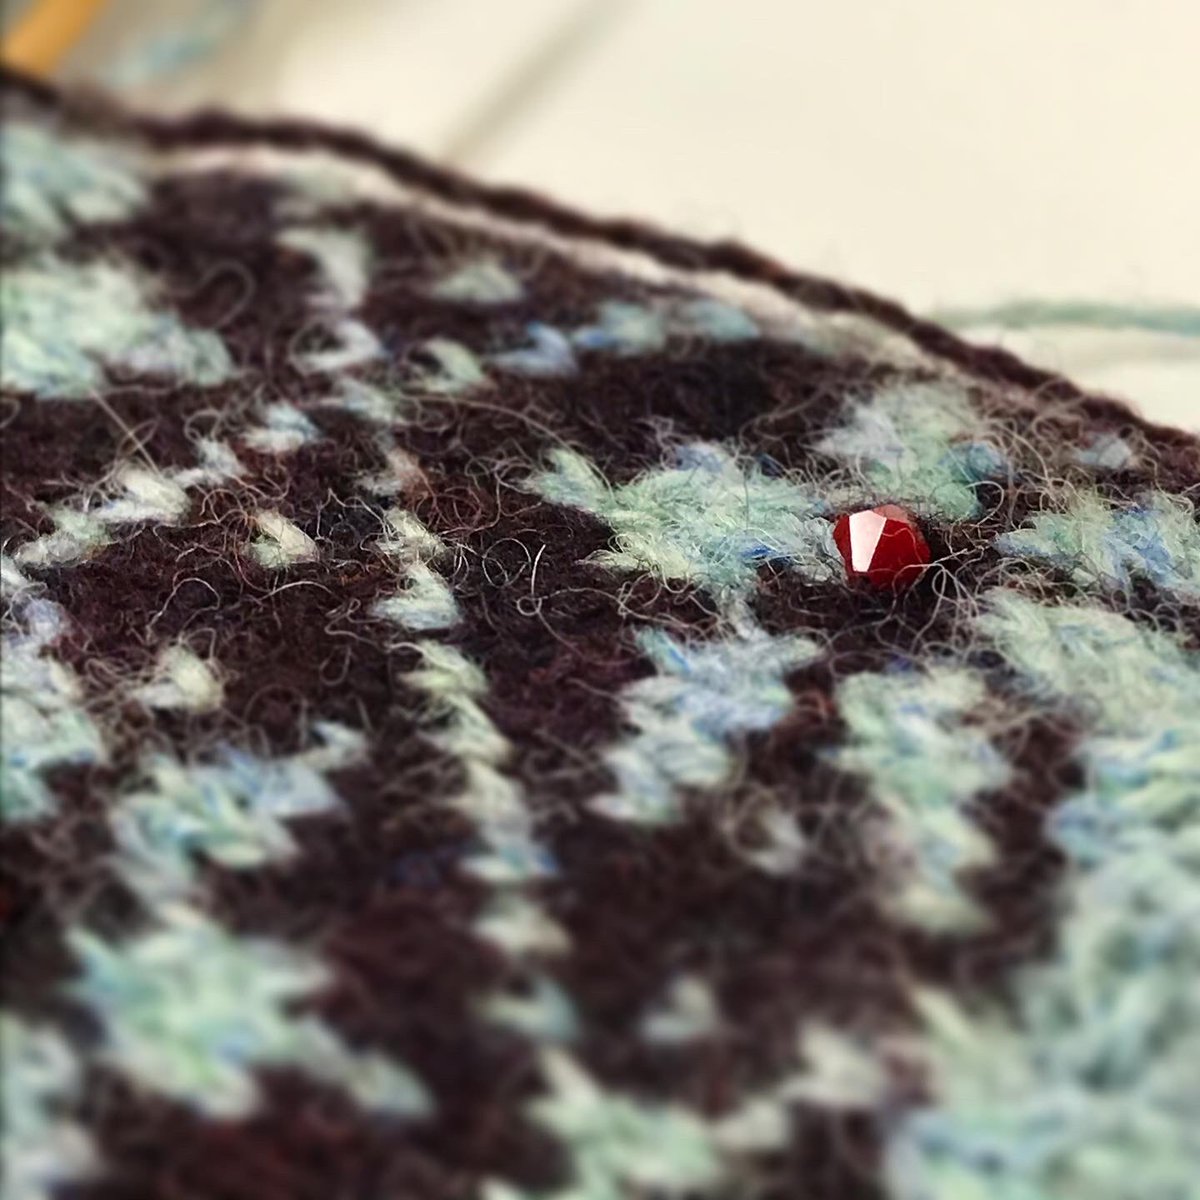 赤いスワロフスキーを控えめに入れています。キラリン✨
#knitting #handknitting #fairisleknitting #fairisle #jamiesonsspindrift #jamiesonsofshetland #swalovski